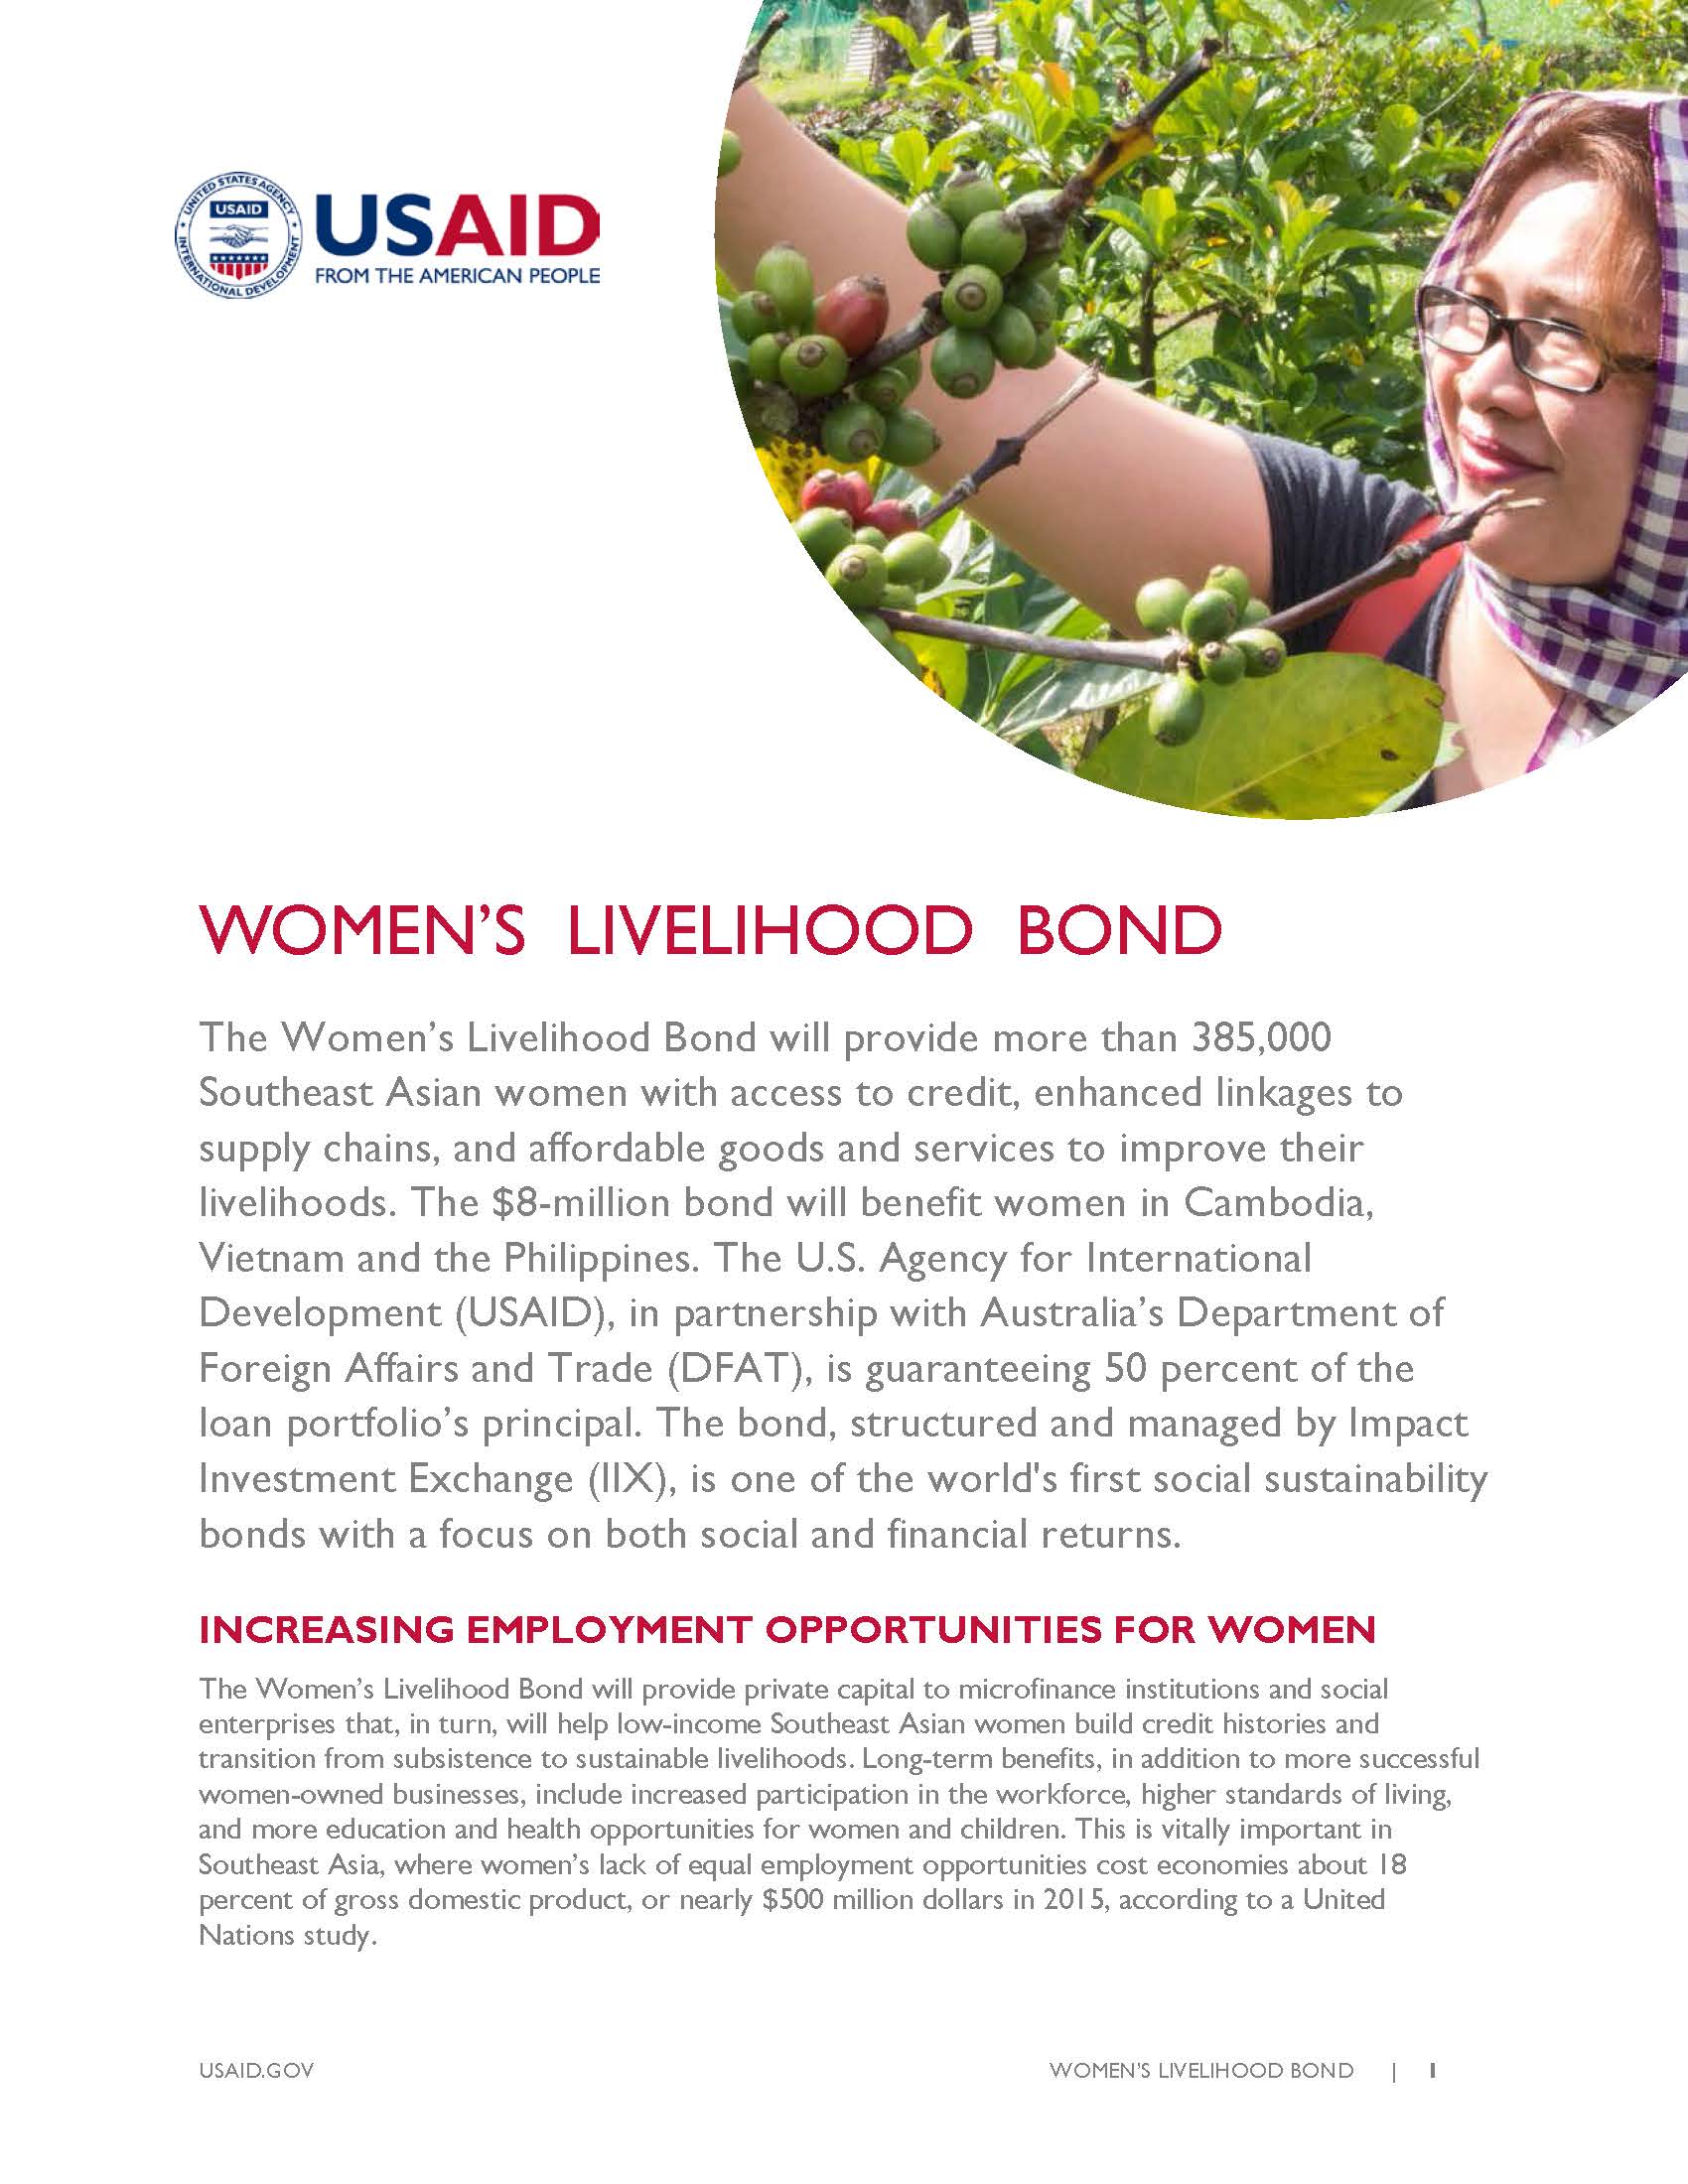 Fact Sheet: Women's Livelihood Bond